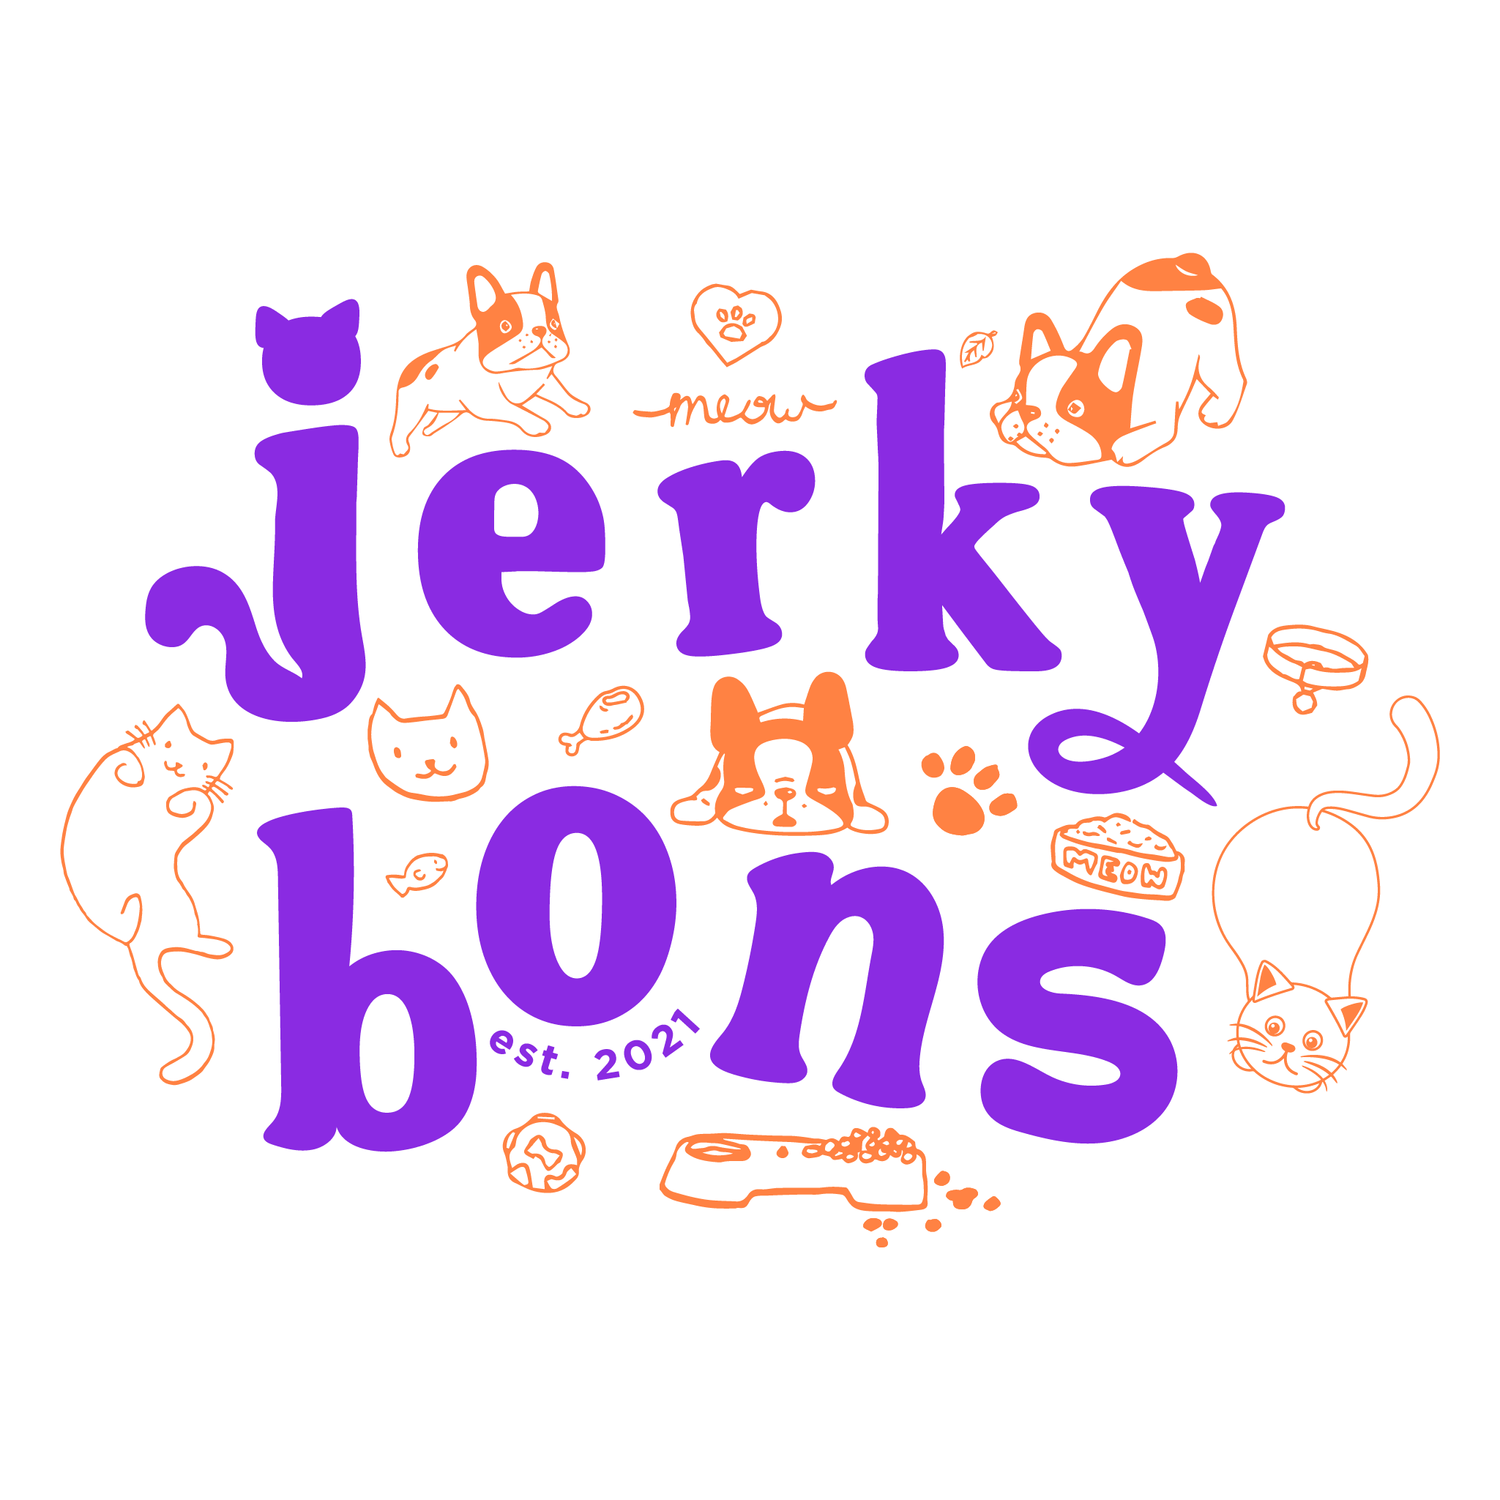 JerkyBons